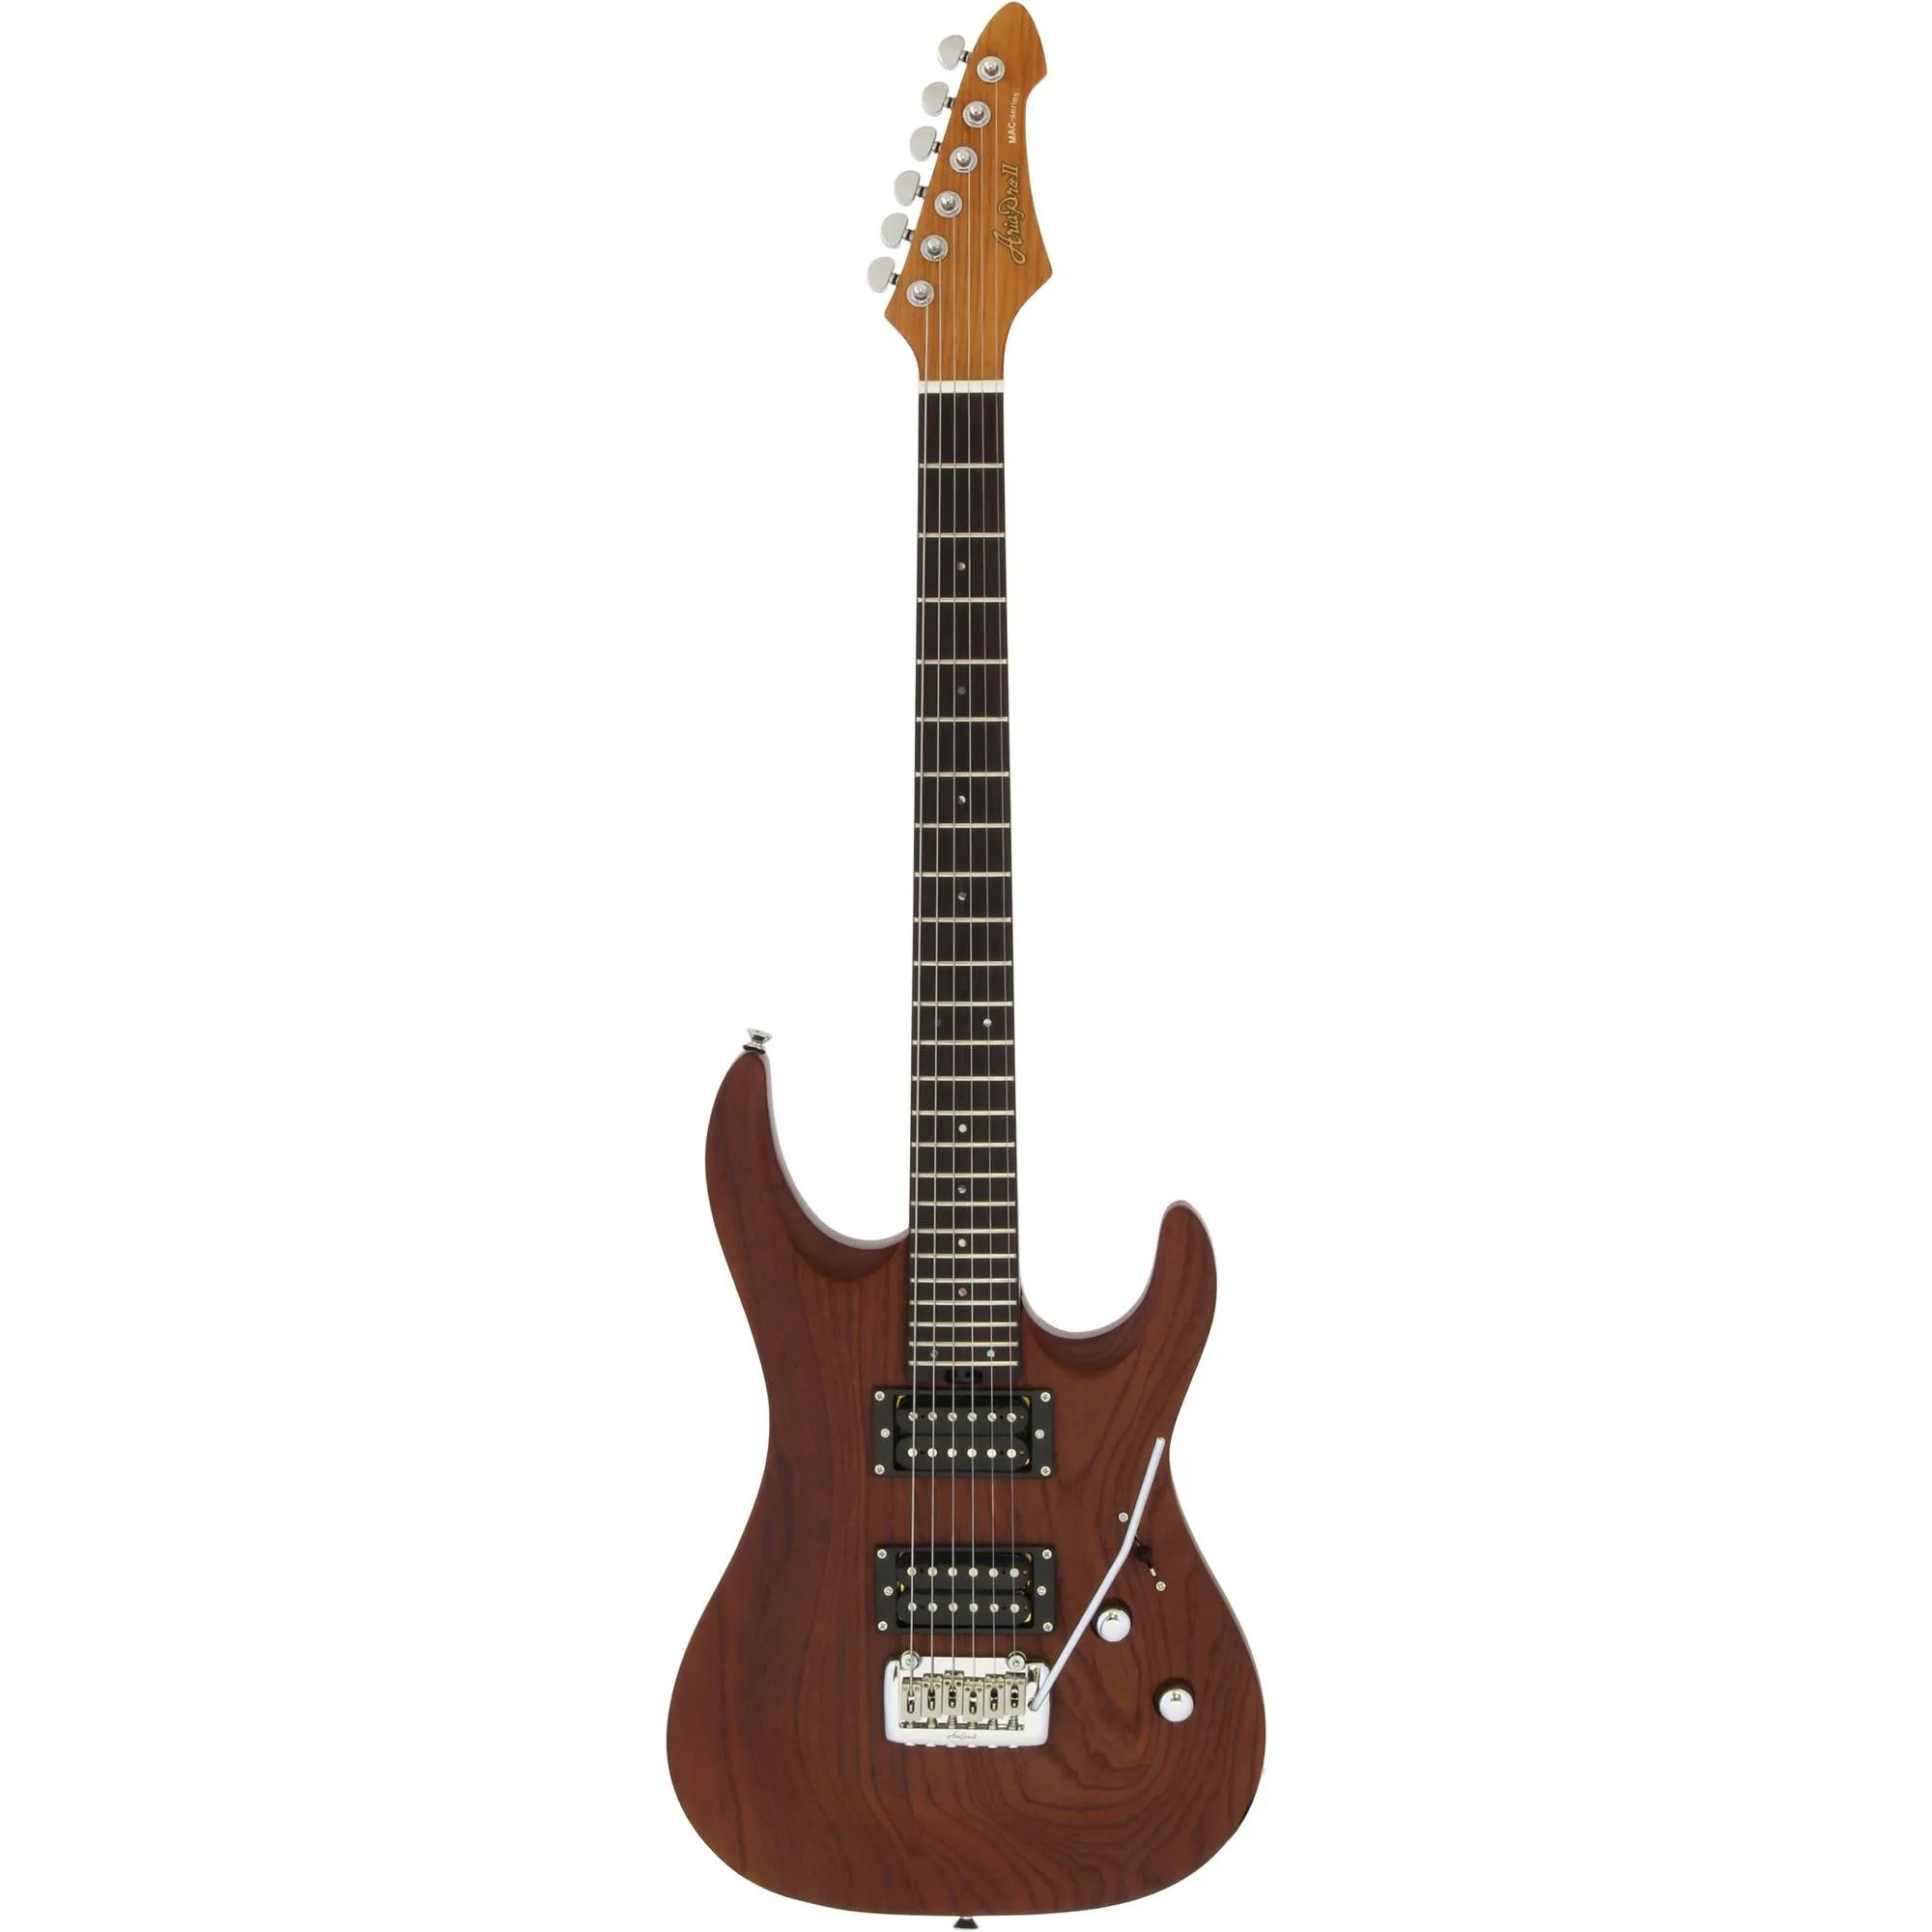 Guitarra Aria Pro II MAC-DLX Stained Brown por 0,00 à vista no boleto/pix ou parcele em até 1x sem juros. Compre na loja Mundomax!